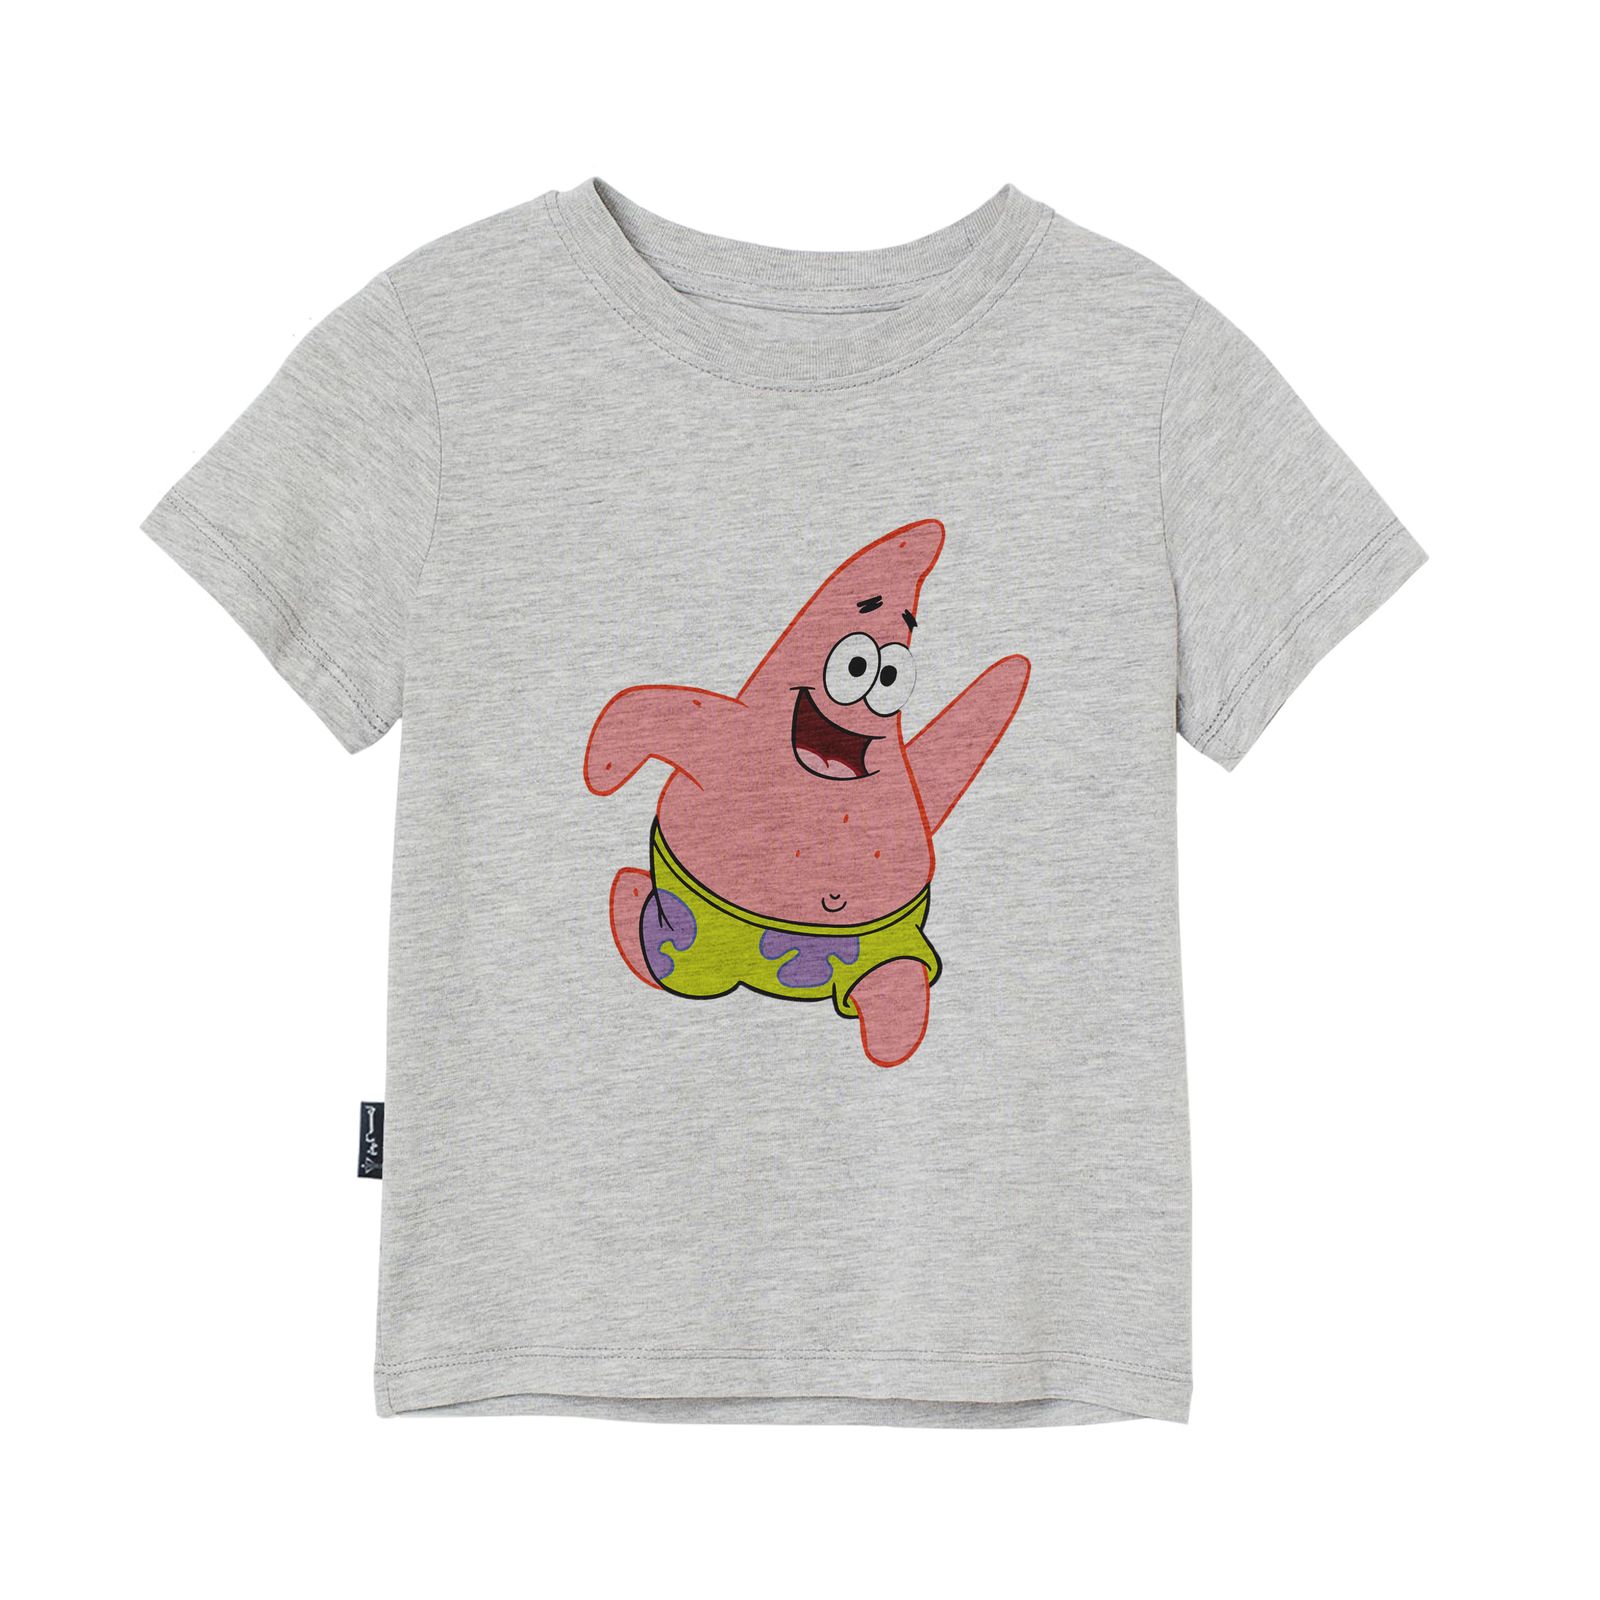 تی شرت آستین کوتاه دخترانه به رسم مدل پاتریک کد 110022 -  - 3